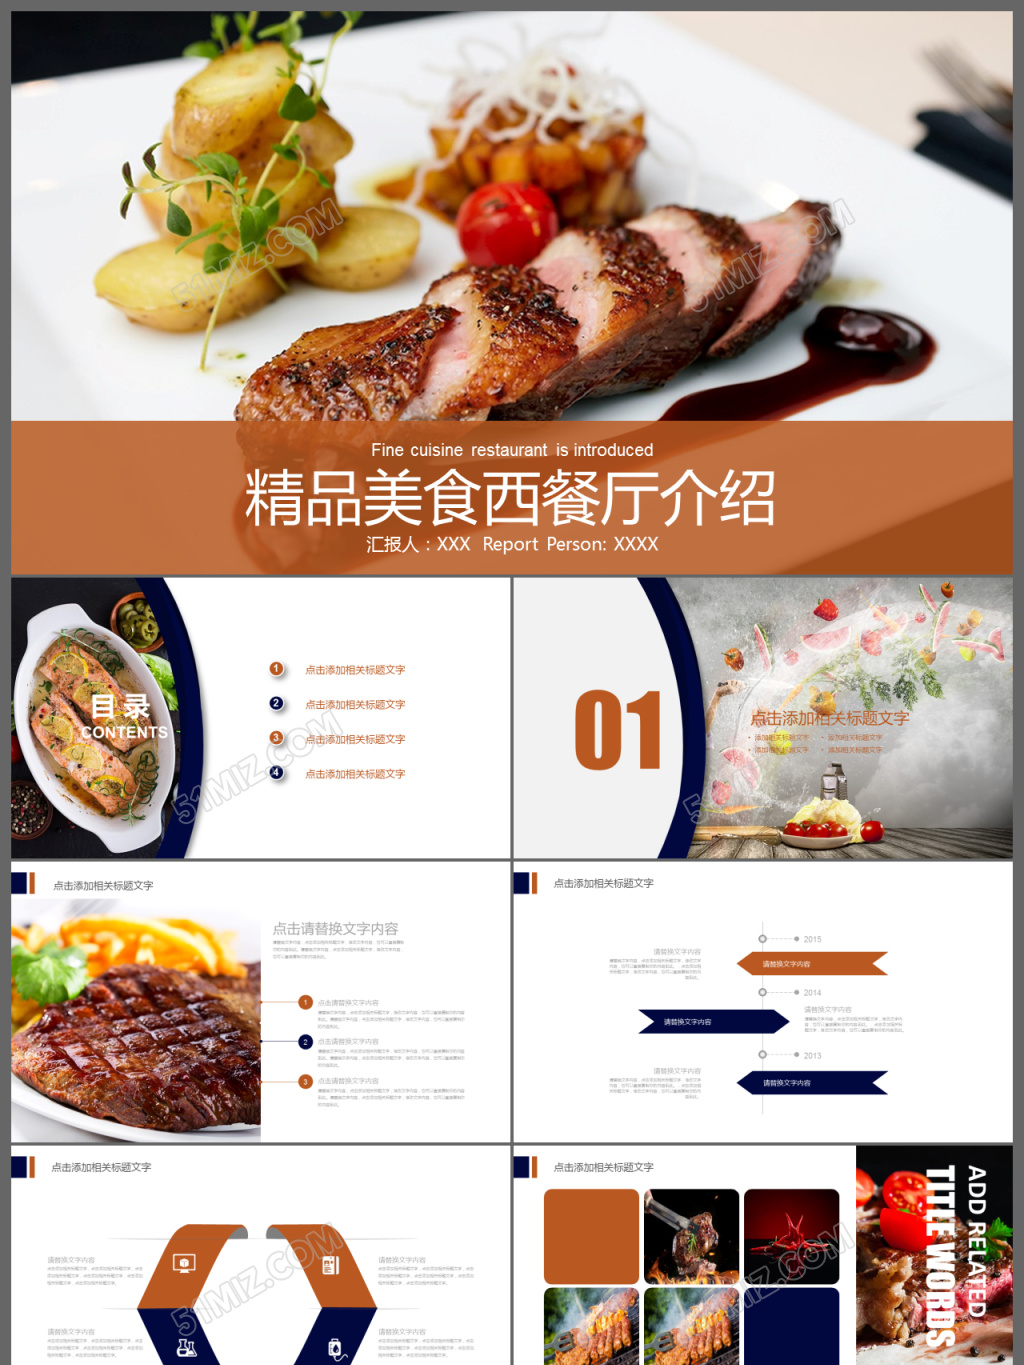 立即下载 精美西餐厅西餐菜品美食介绍动态ppt模板 立即下载 立即下载